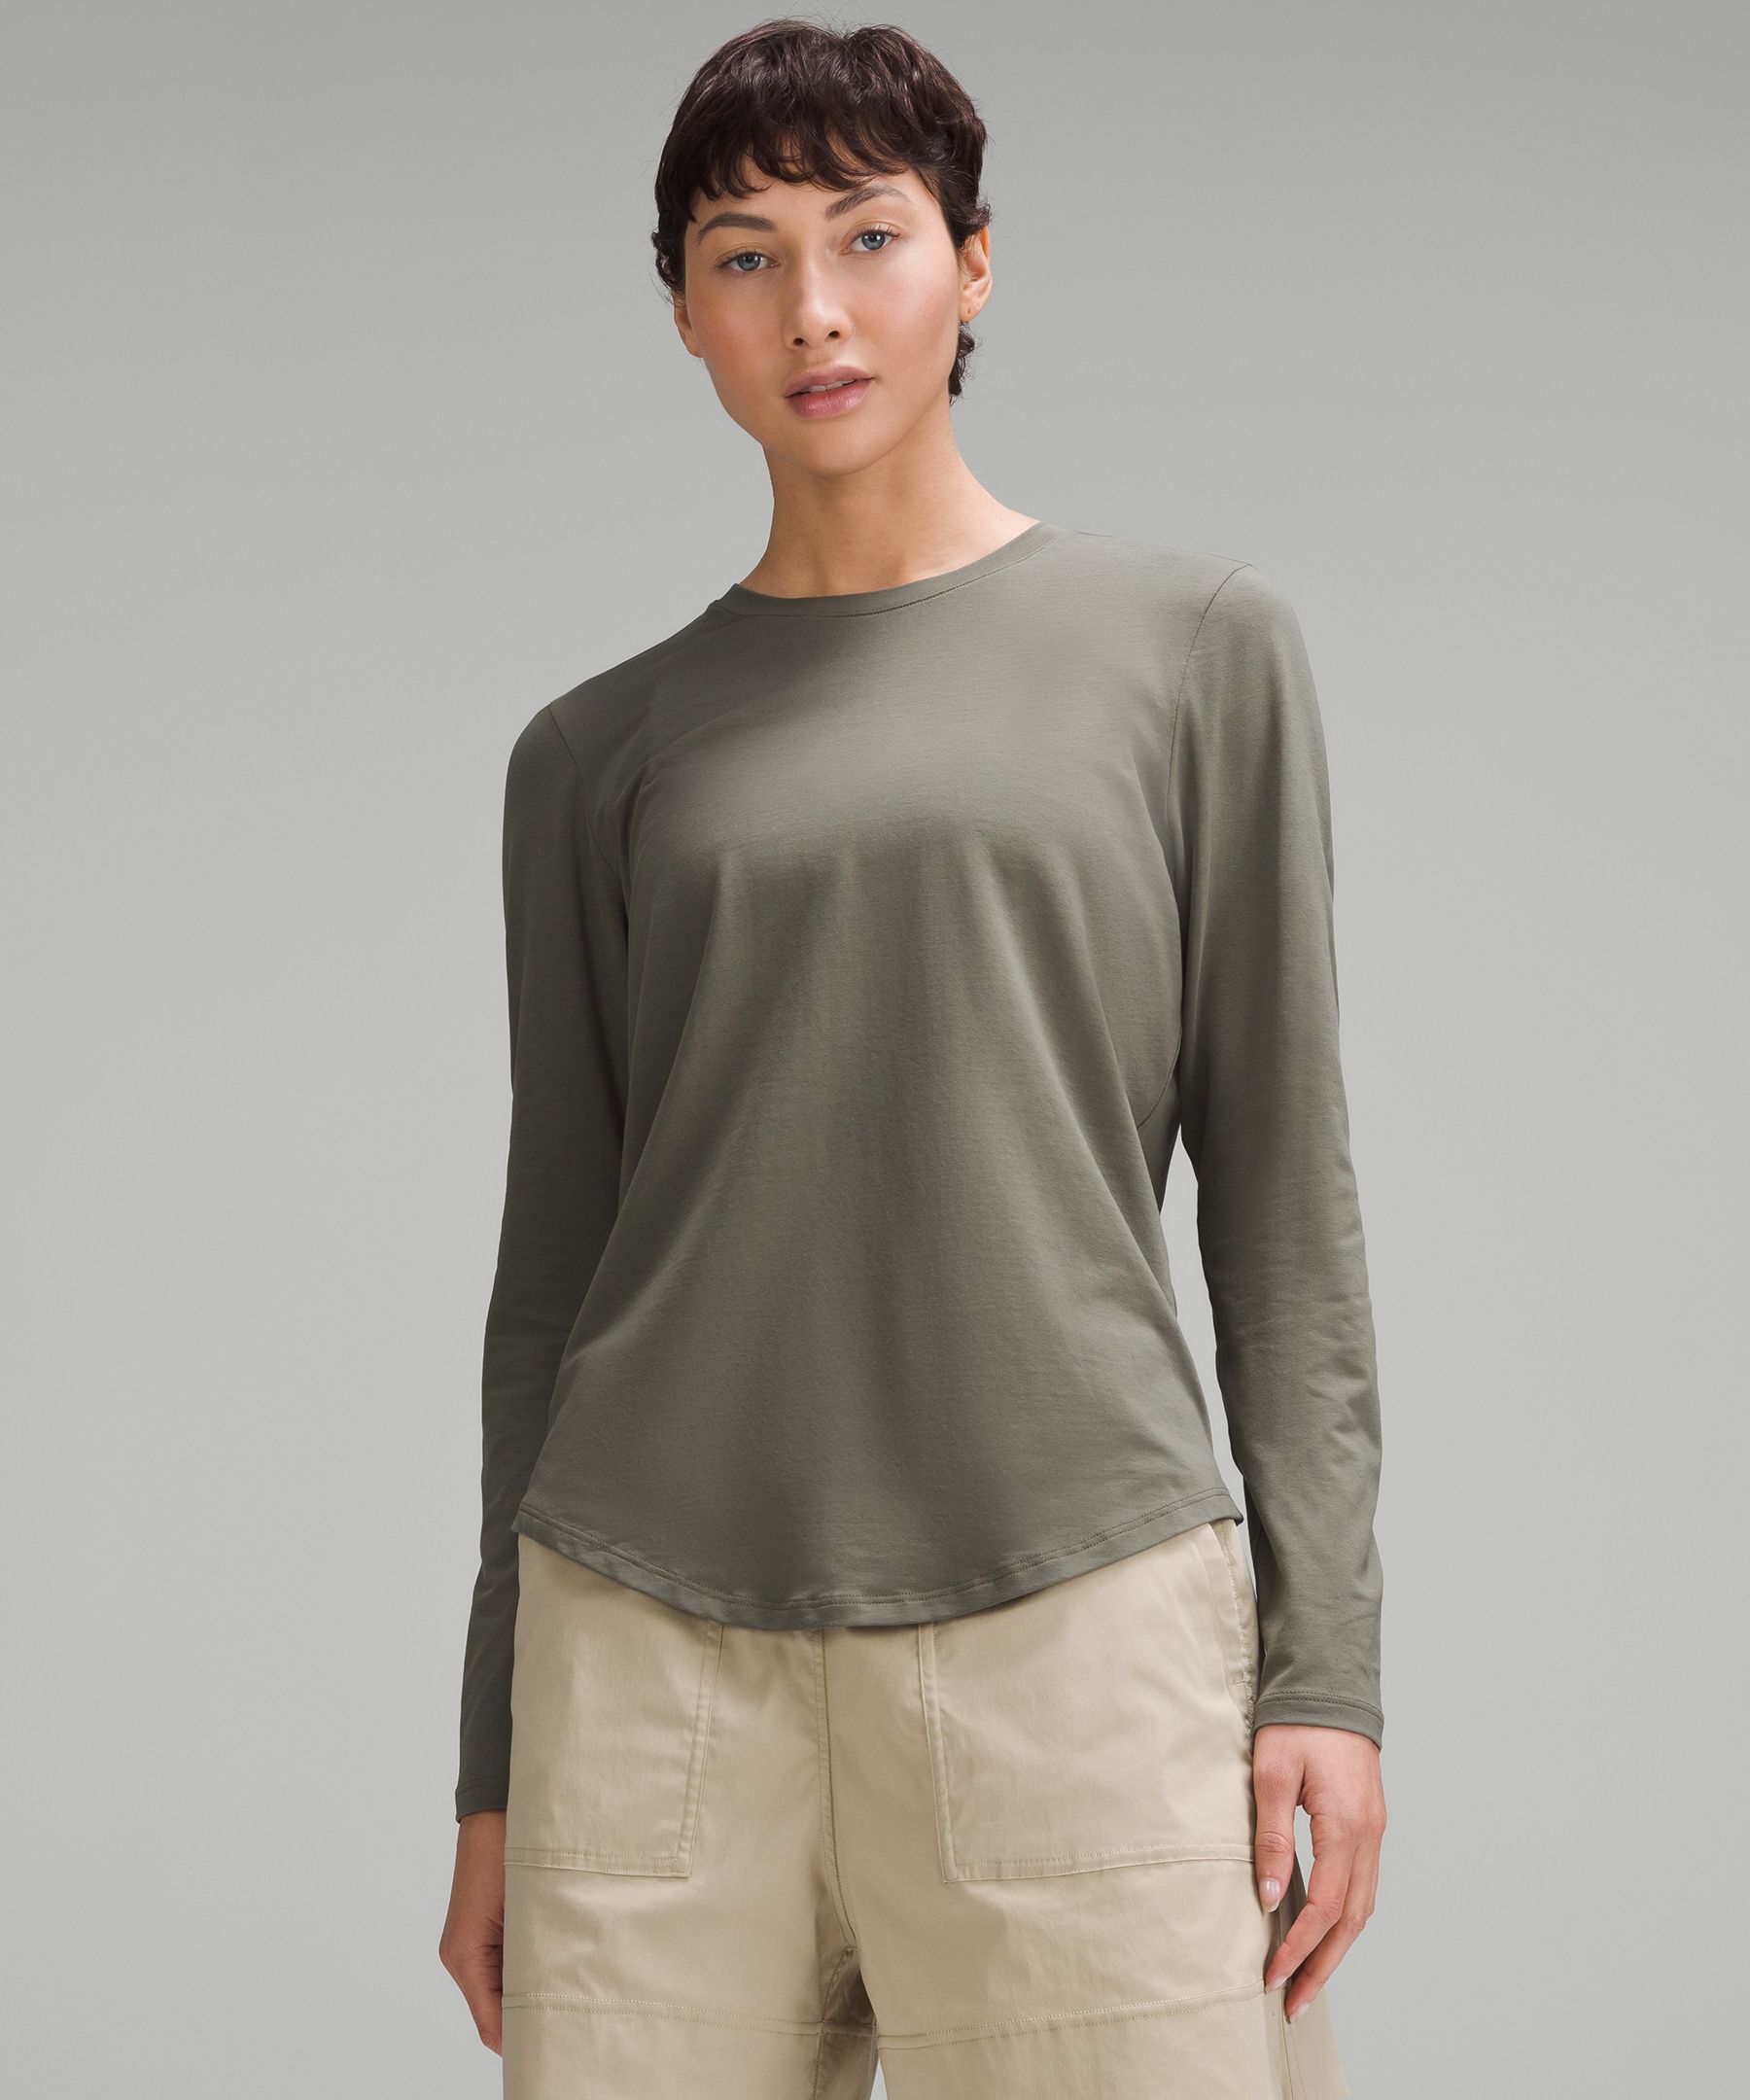 Women's Long Sleeve Shirts